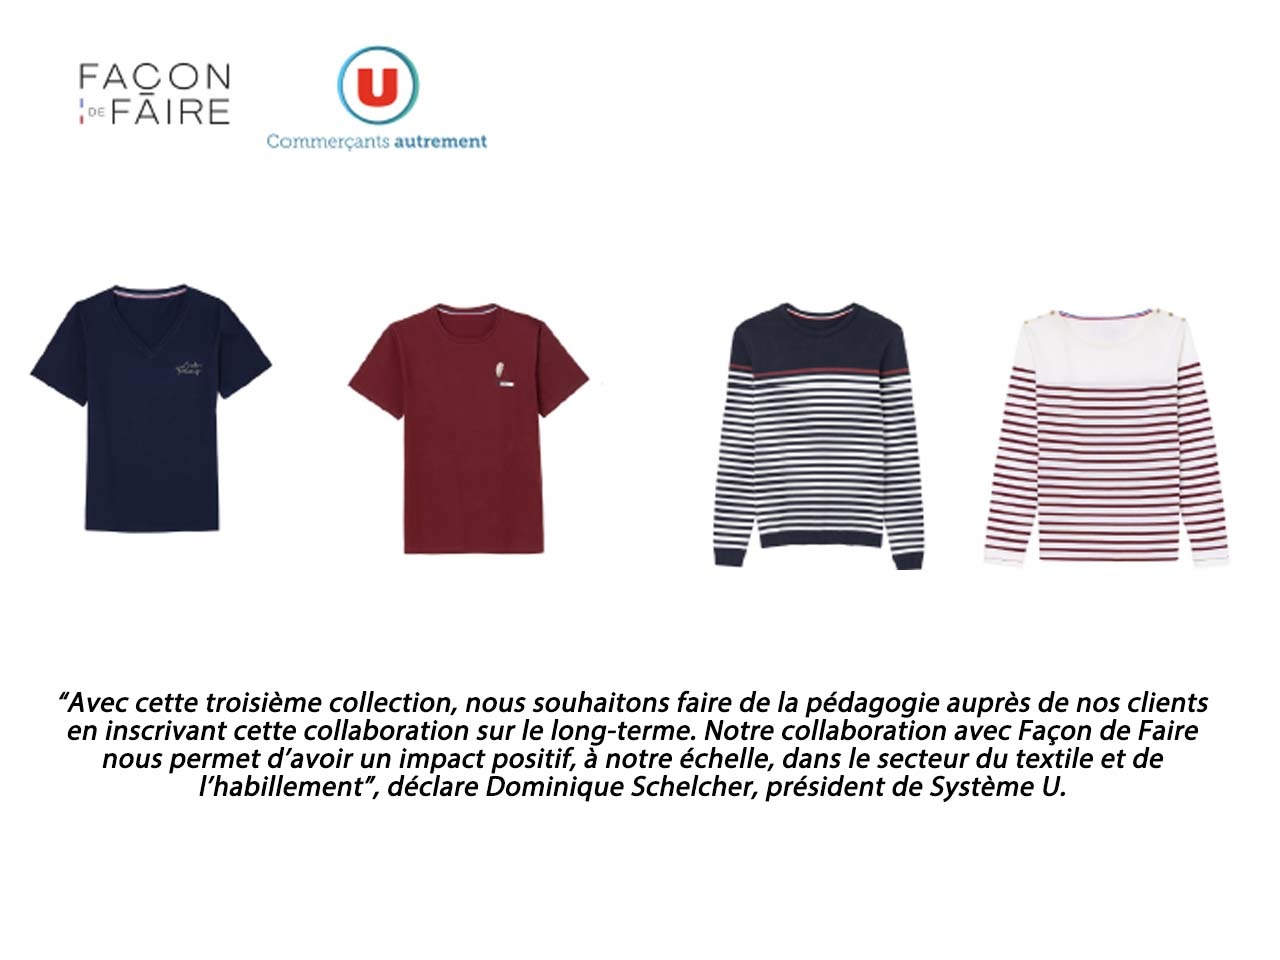 Façon de Faire et les Magasins U lancent leur troisième collection textile-habillement fabriquée en France